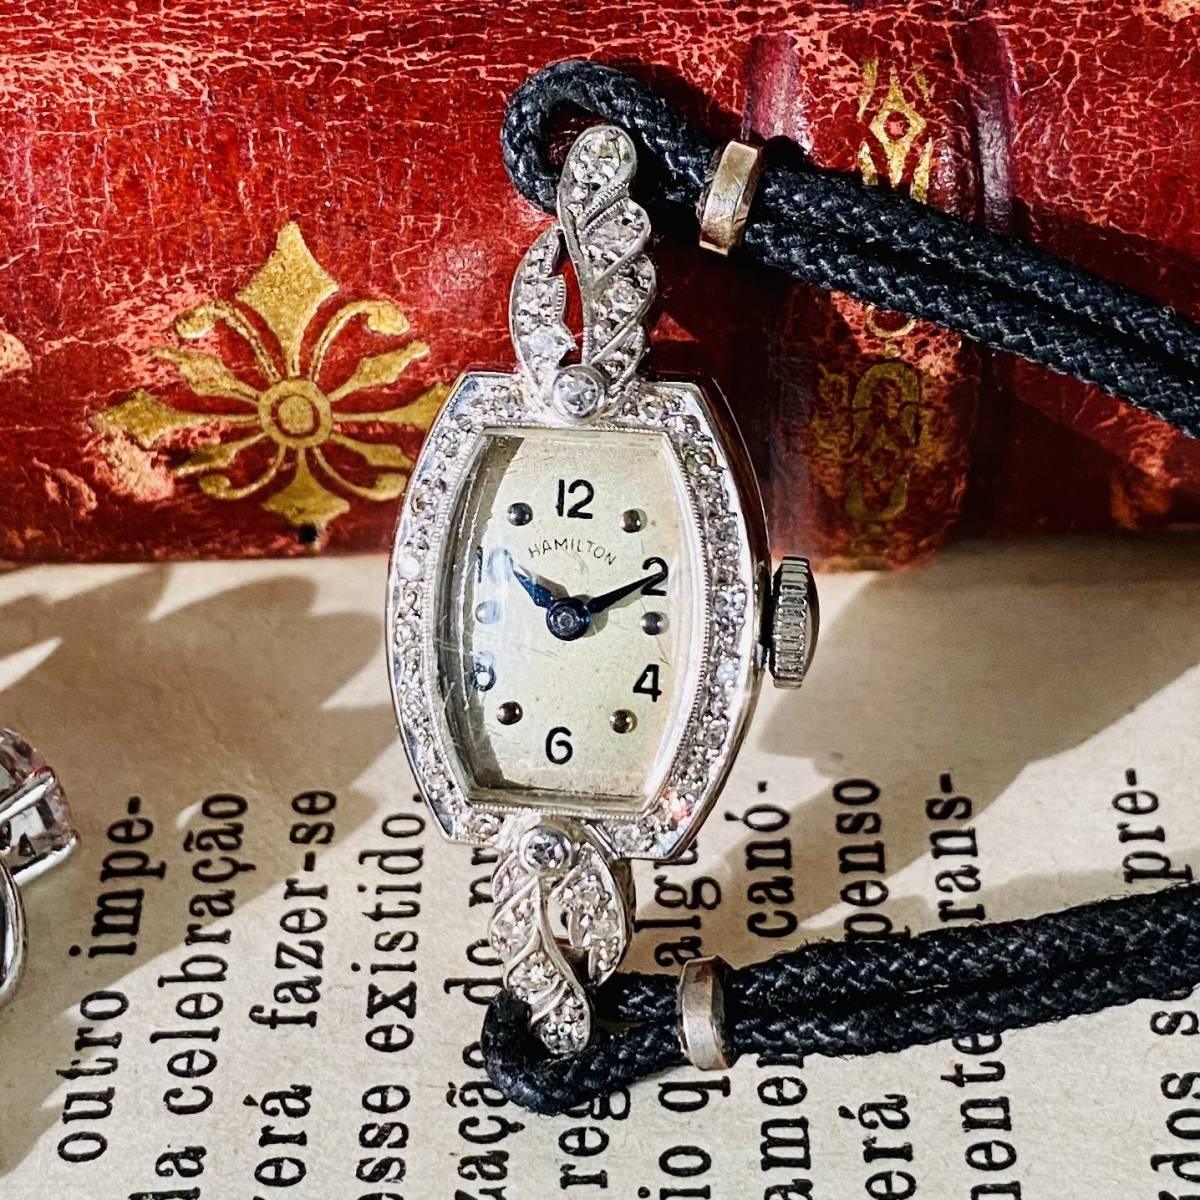 Hamilton Watch Luxury 16 Diamonds 14k 1950s Gold Vintage - Murphy Johnson Watches Co.